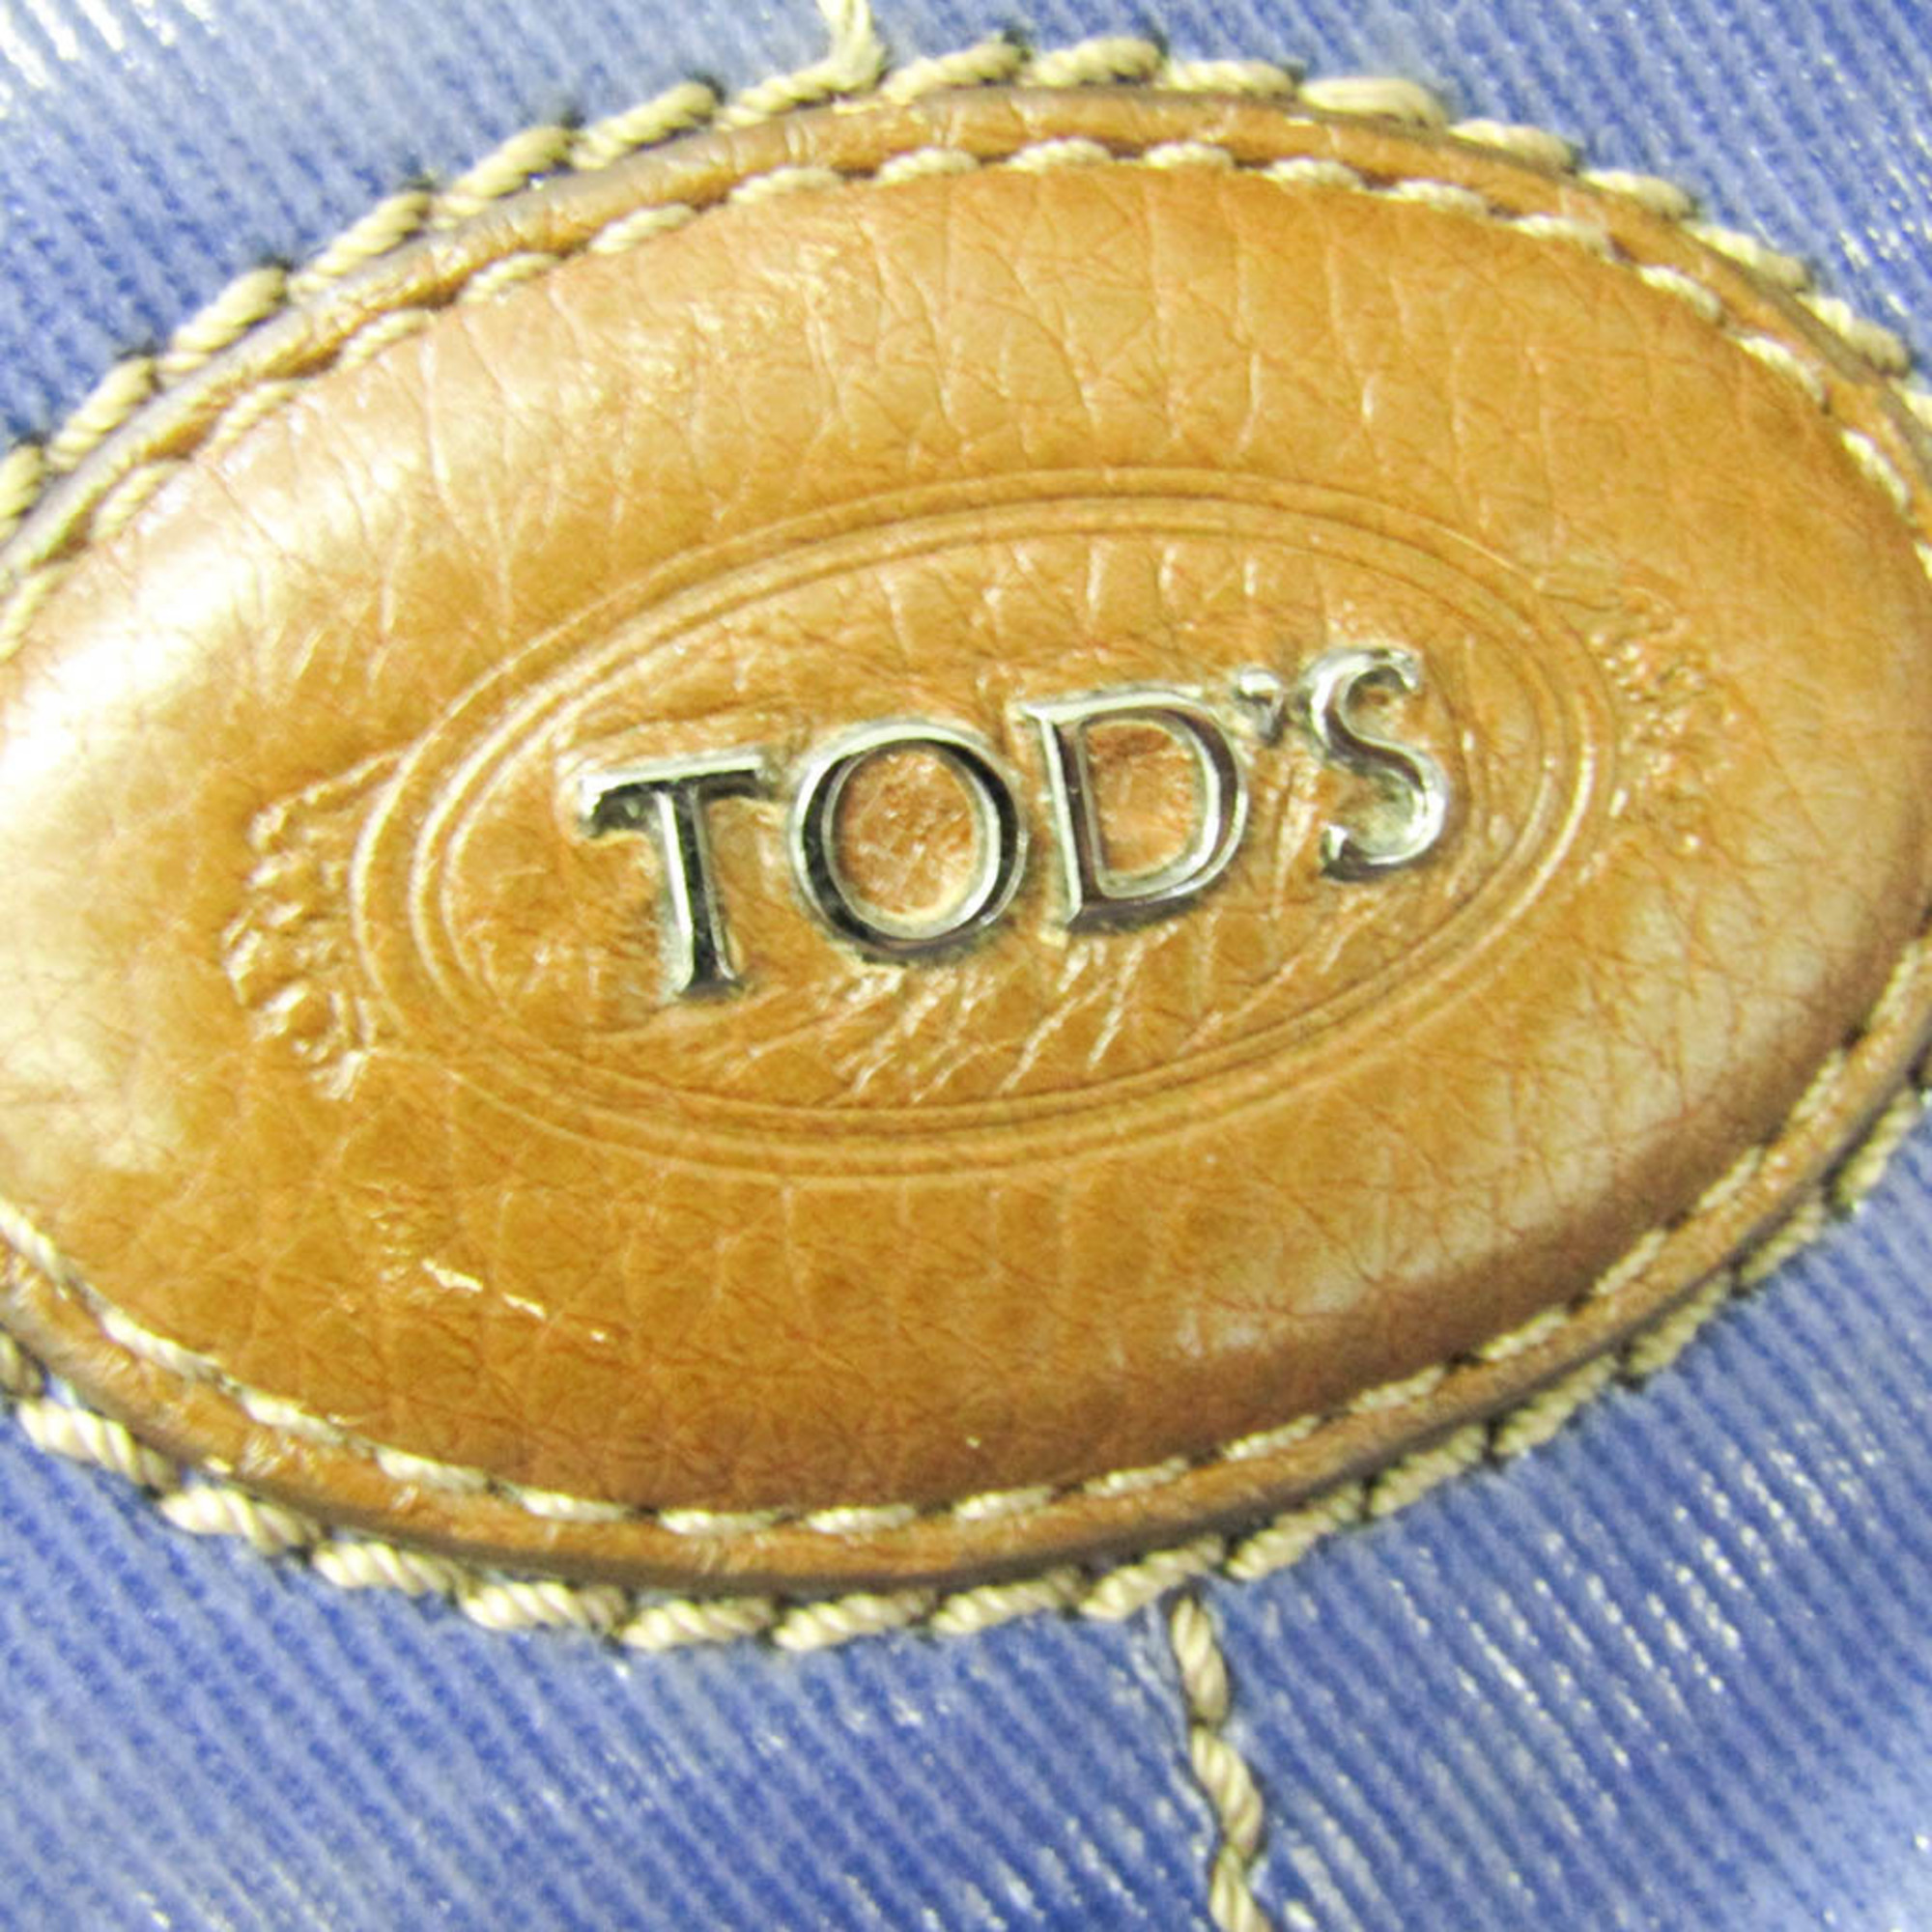 Tod's Women's Vinyl Coating Handbag,Shoulder Bag Brown,Navy